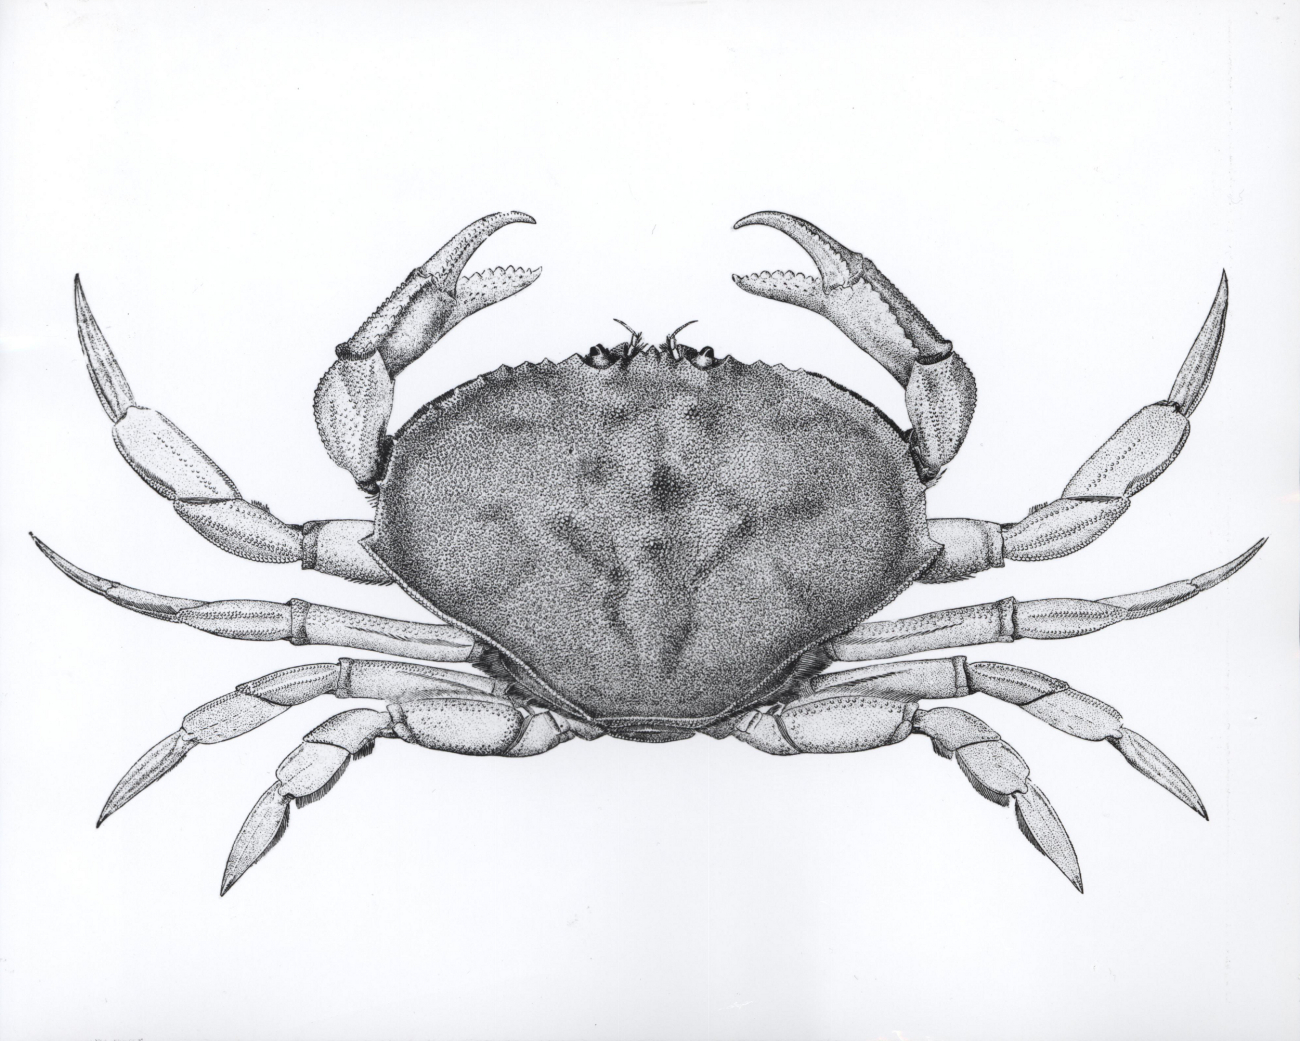 Dungeness crab (Cancer magister) (after Rathbun)